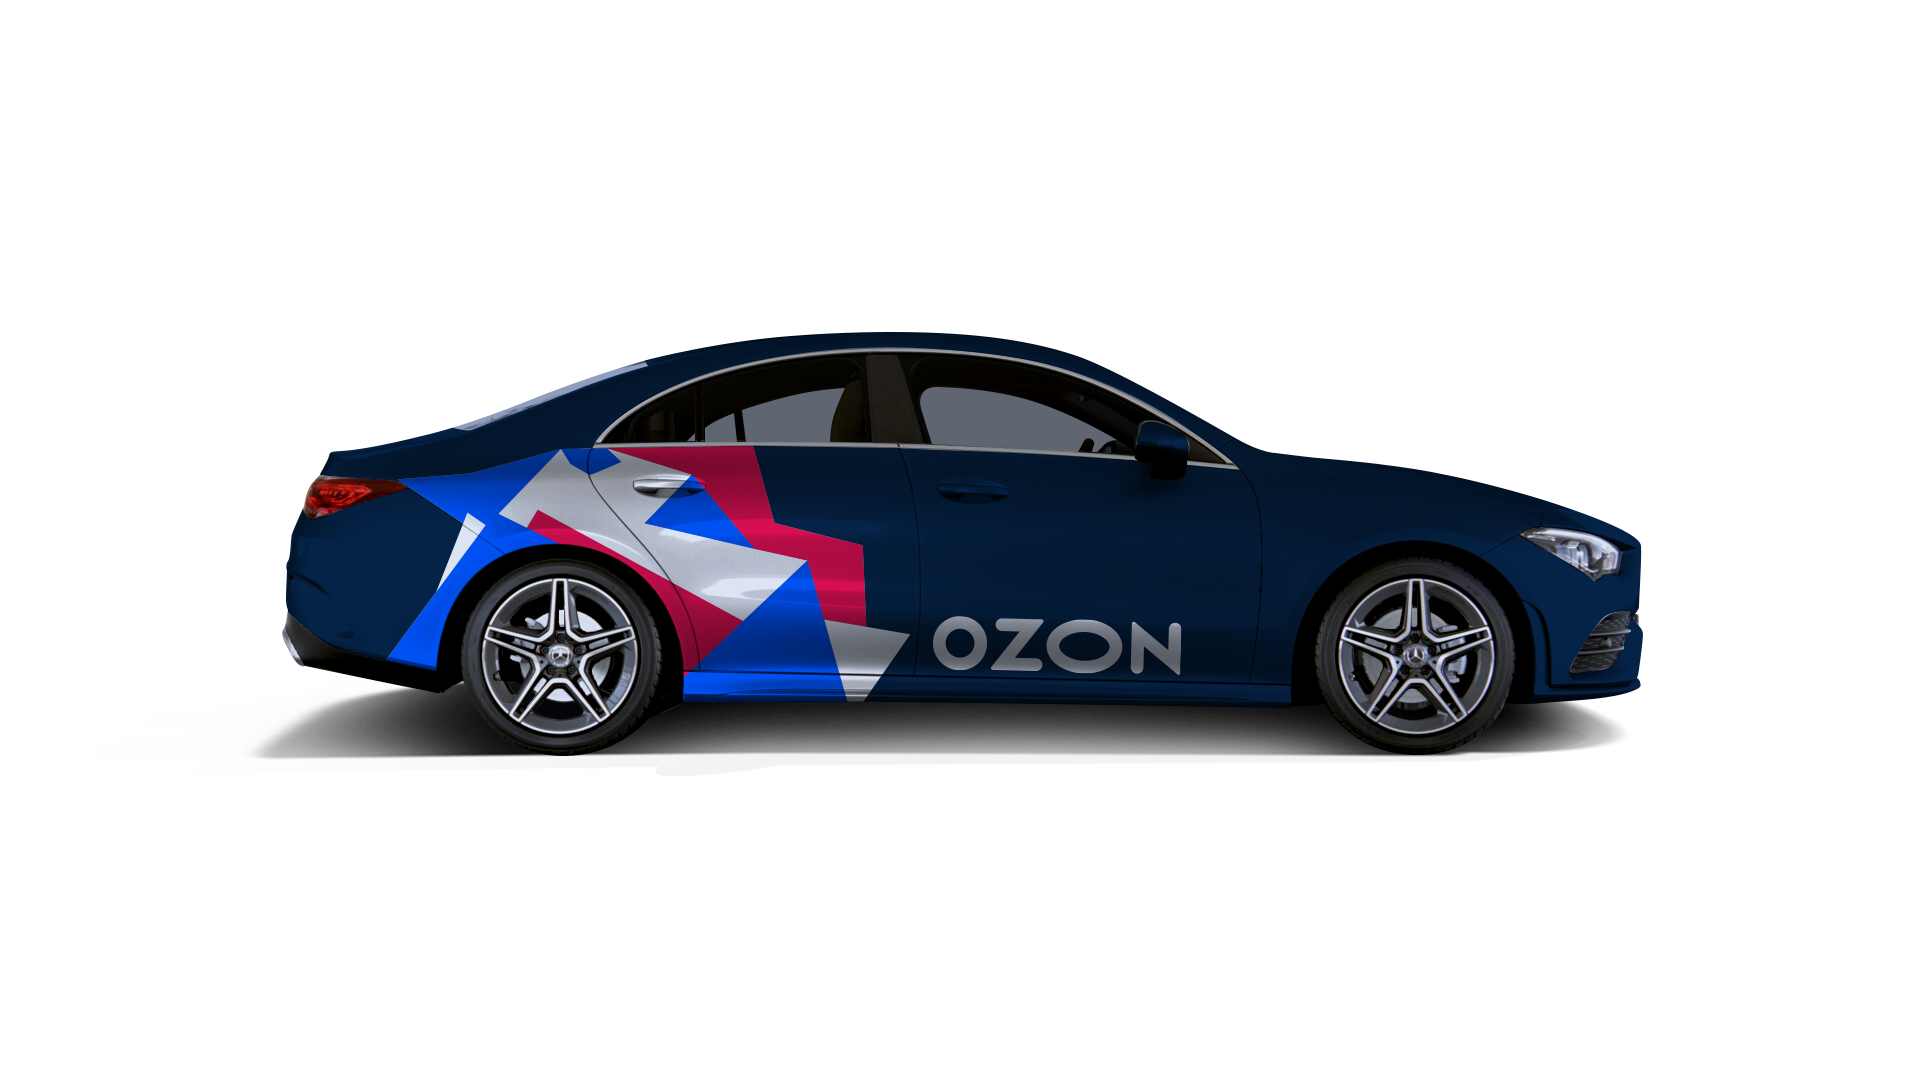 Авто на озоне цена. Машина Озон. Машины Озон фтиель?. OZON фото машина. Машина Озон легковая.